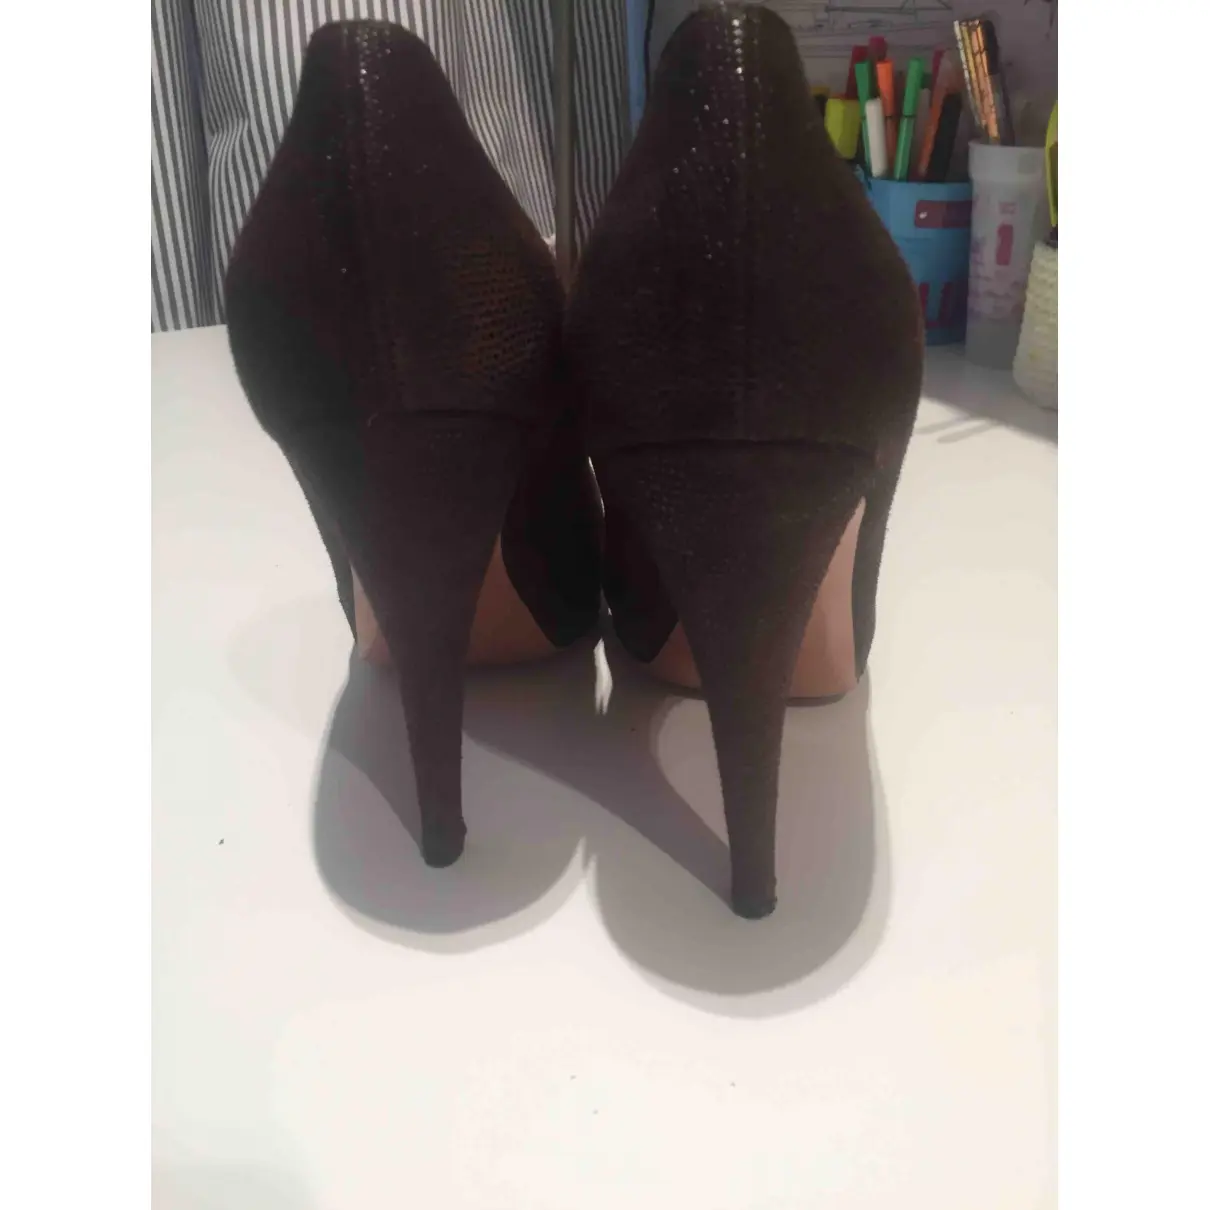 Buy Golden Goose Leather heels online